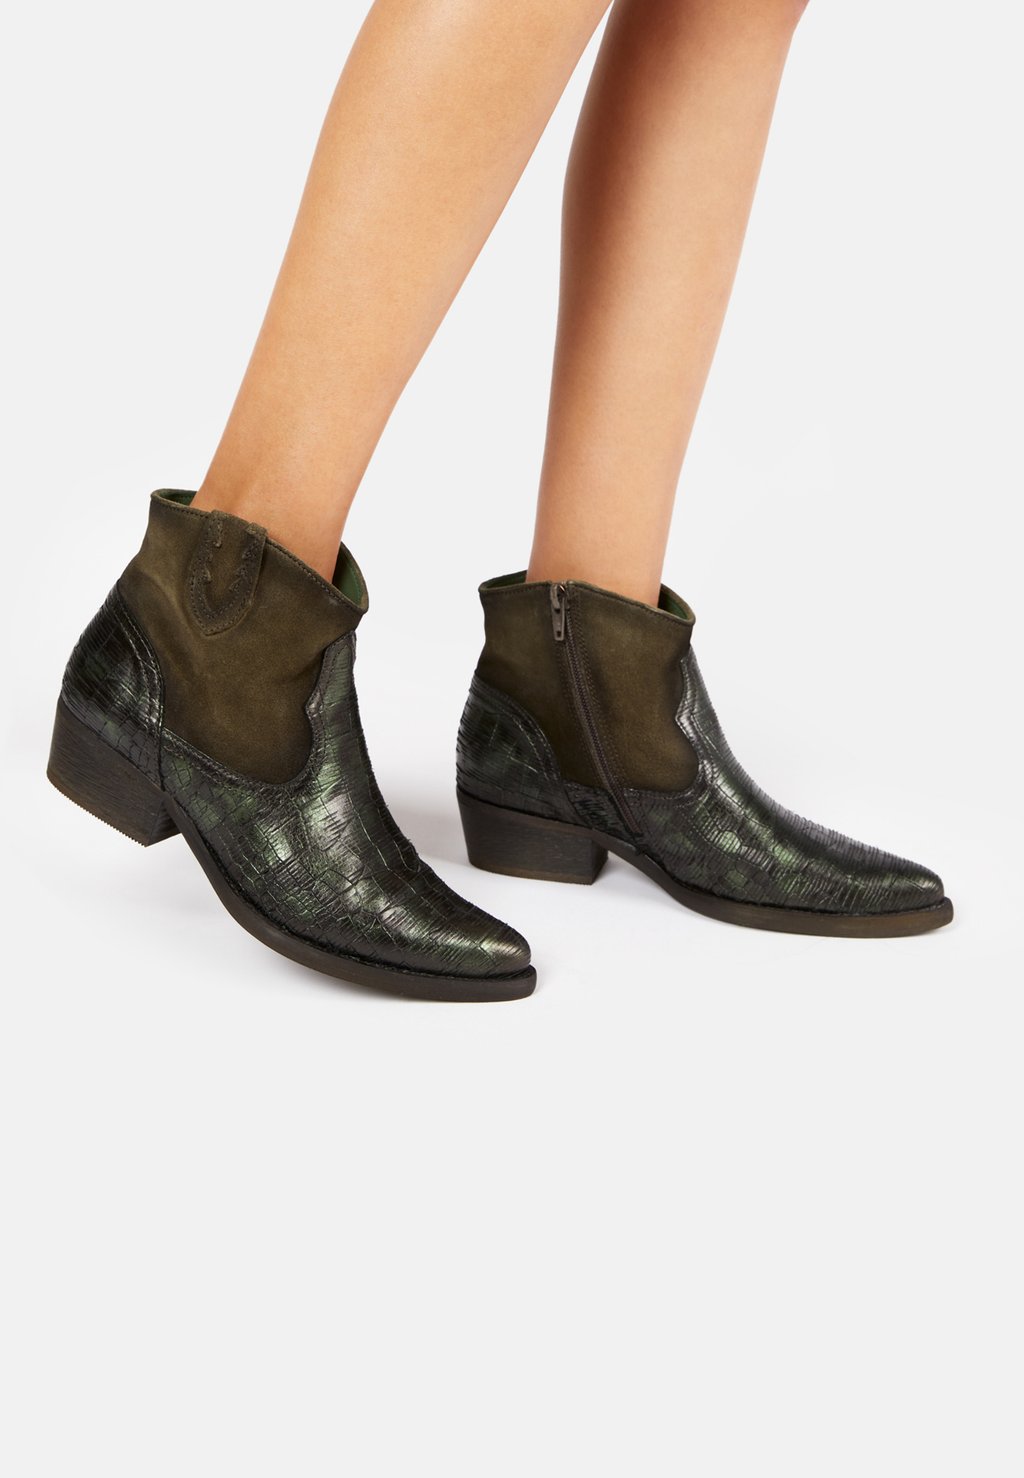 Техасские/байкерские ботинки Felmini, зеленые